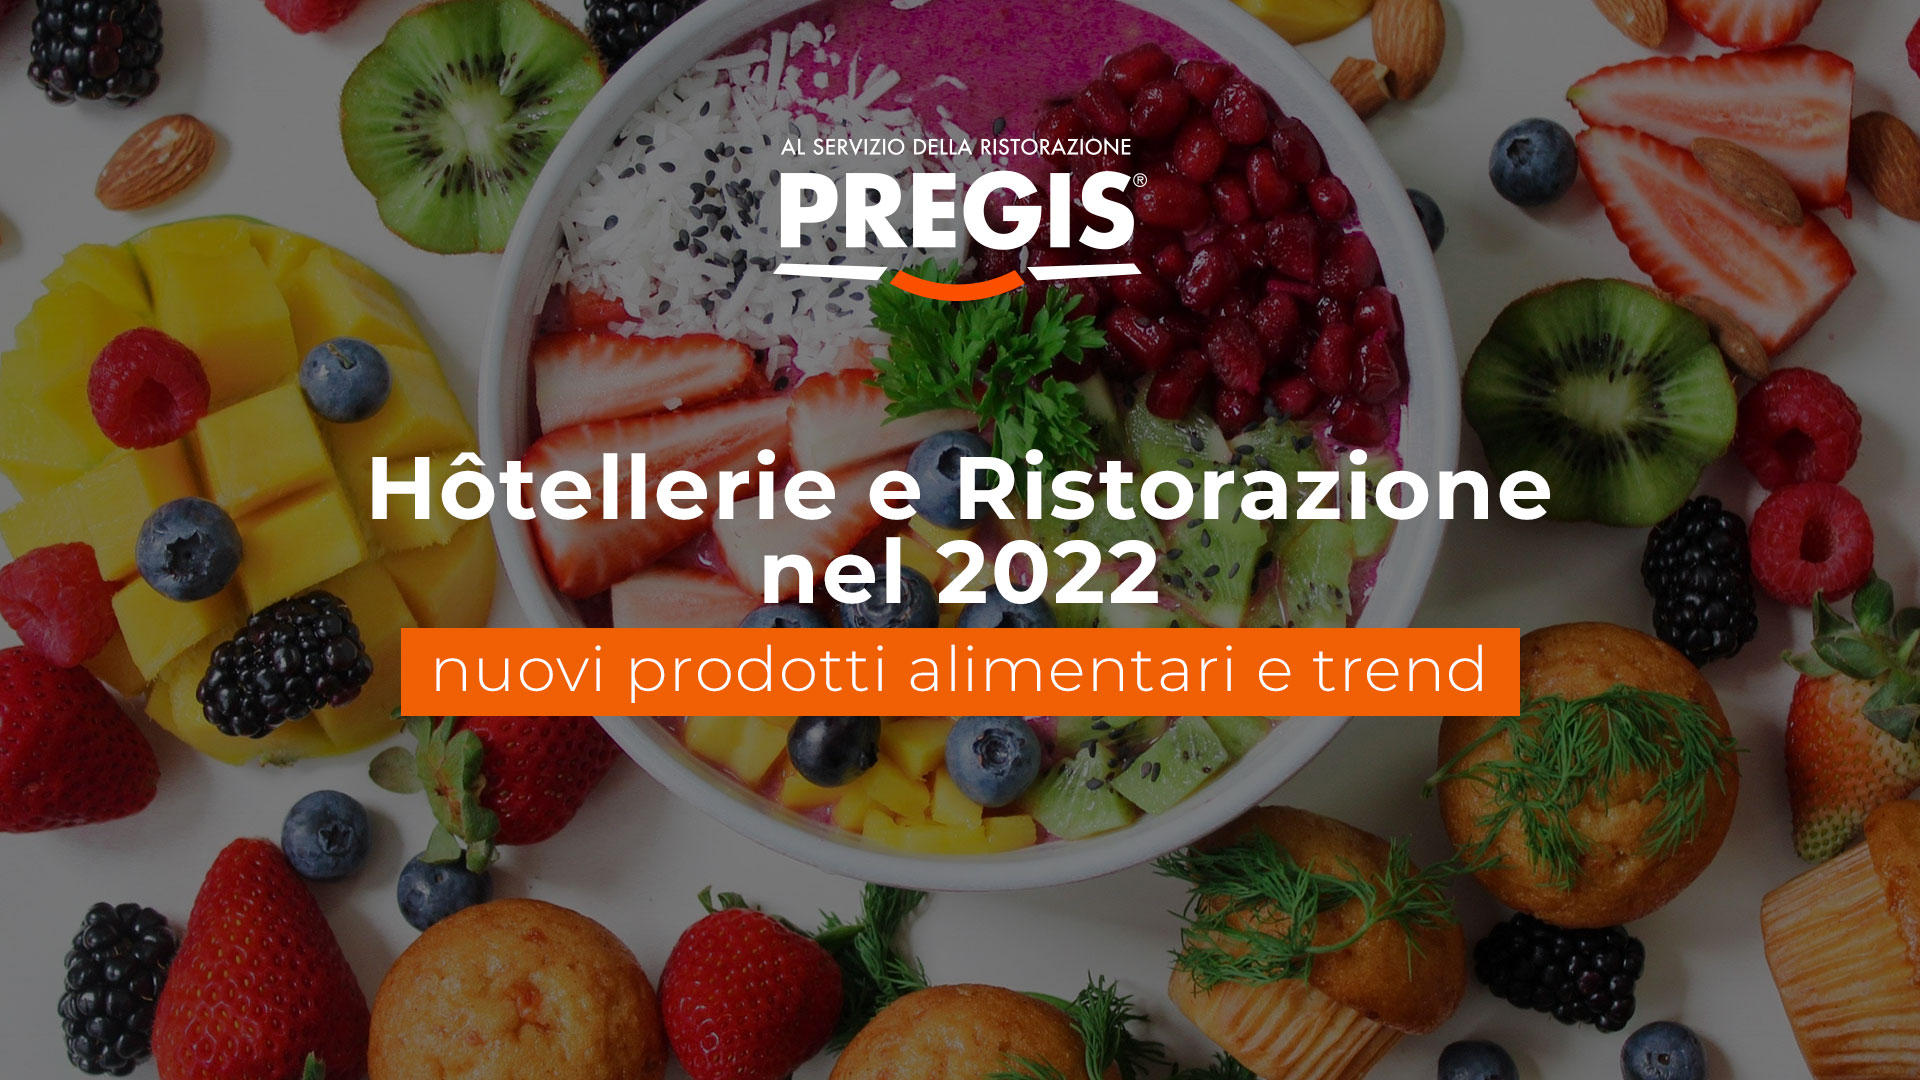 Hôtellerie e Ristorazione 2022 nuovi prodotti alimentari e trend